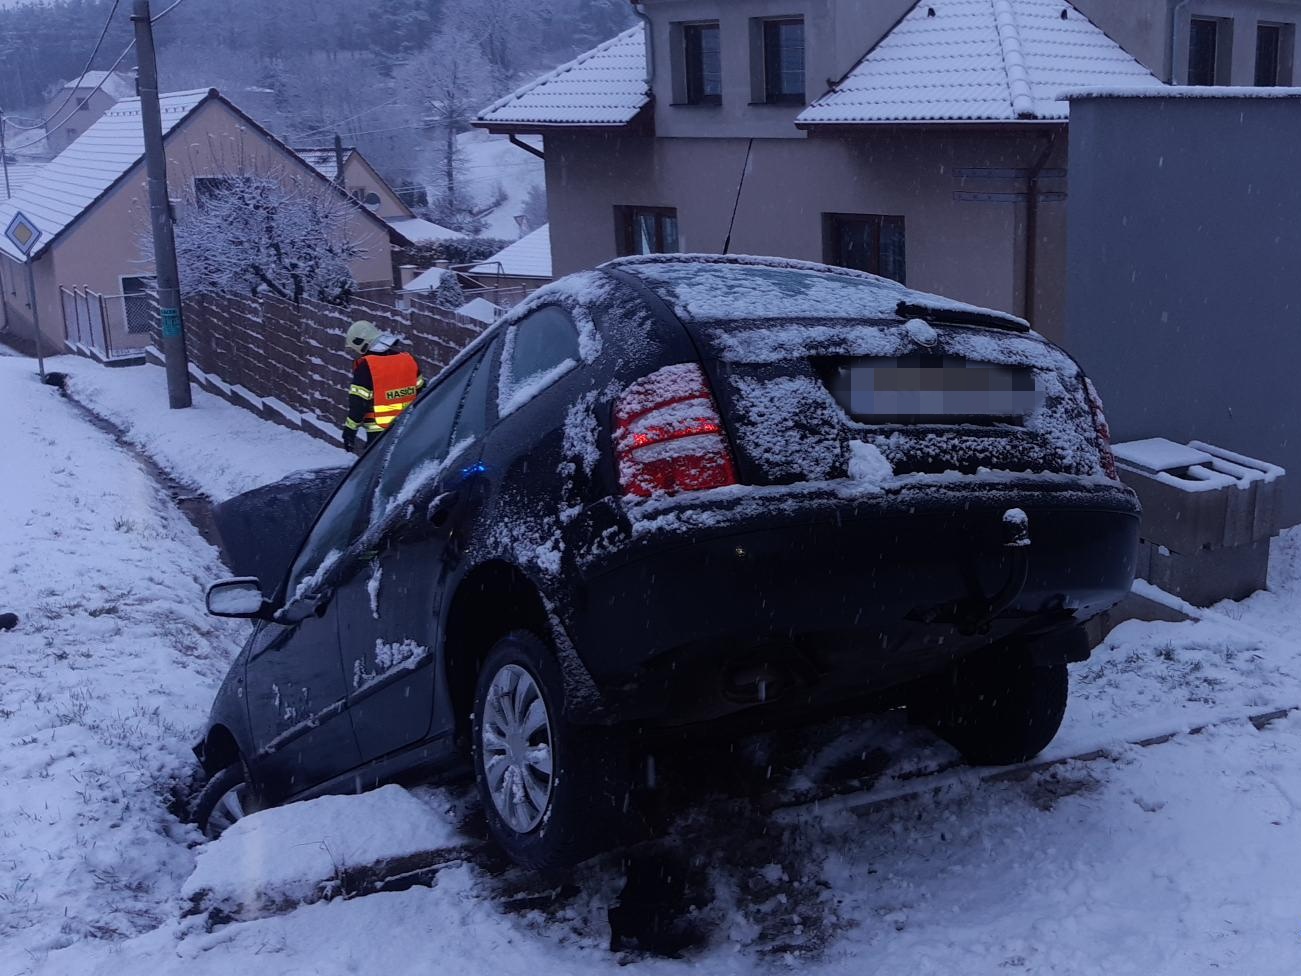 SČK_Sníh komplikoval dopravu ve Středočeském kraji.jpg